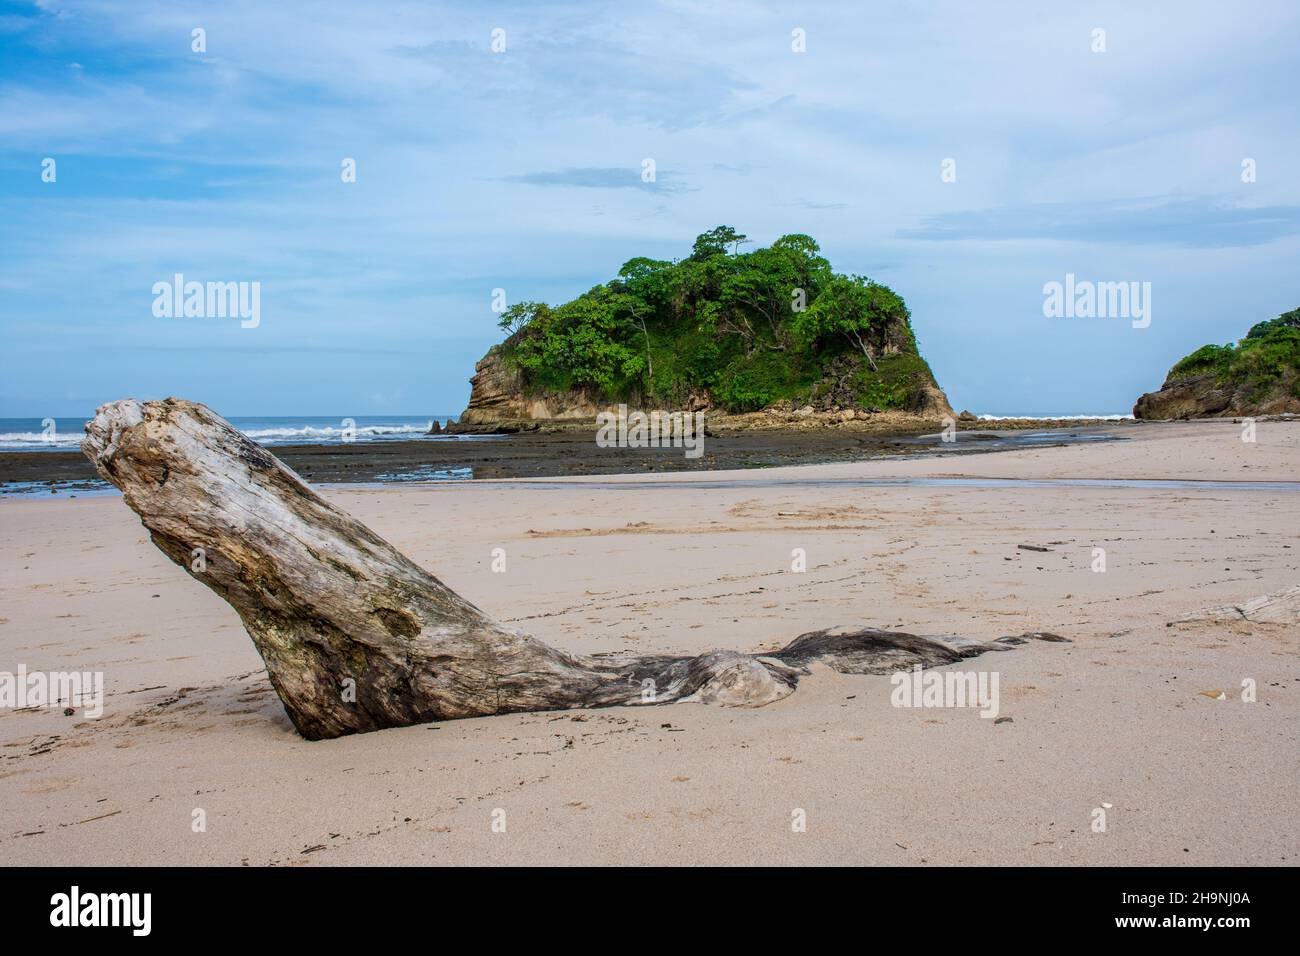 Driftwood vergraben in Sand an einem abgelegenen unbevölkerten Strand in Costa Rica mit tropischer Insel vor der Küste Stockfoto